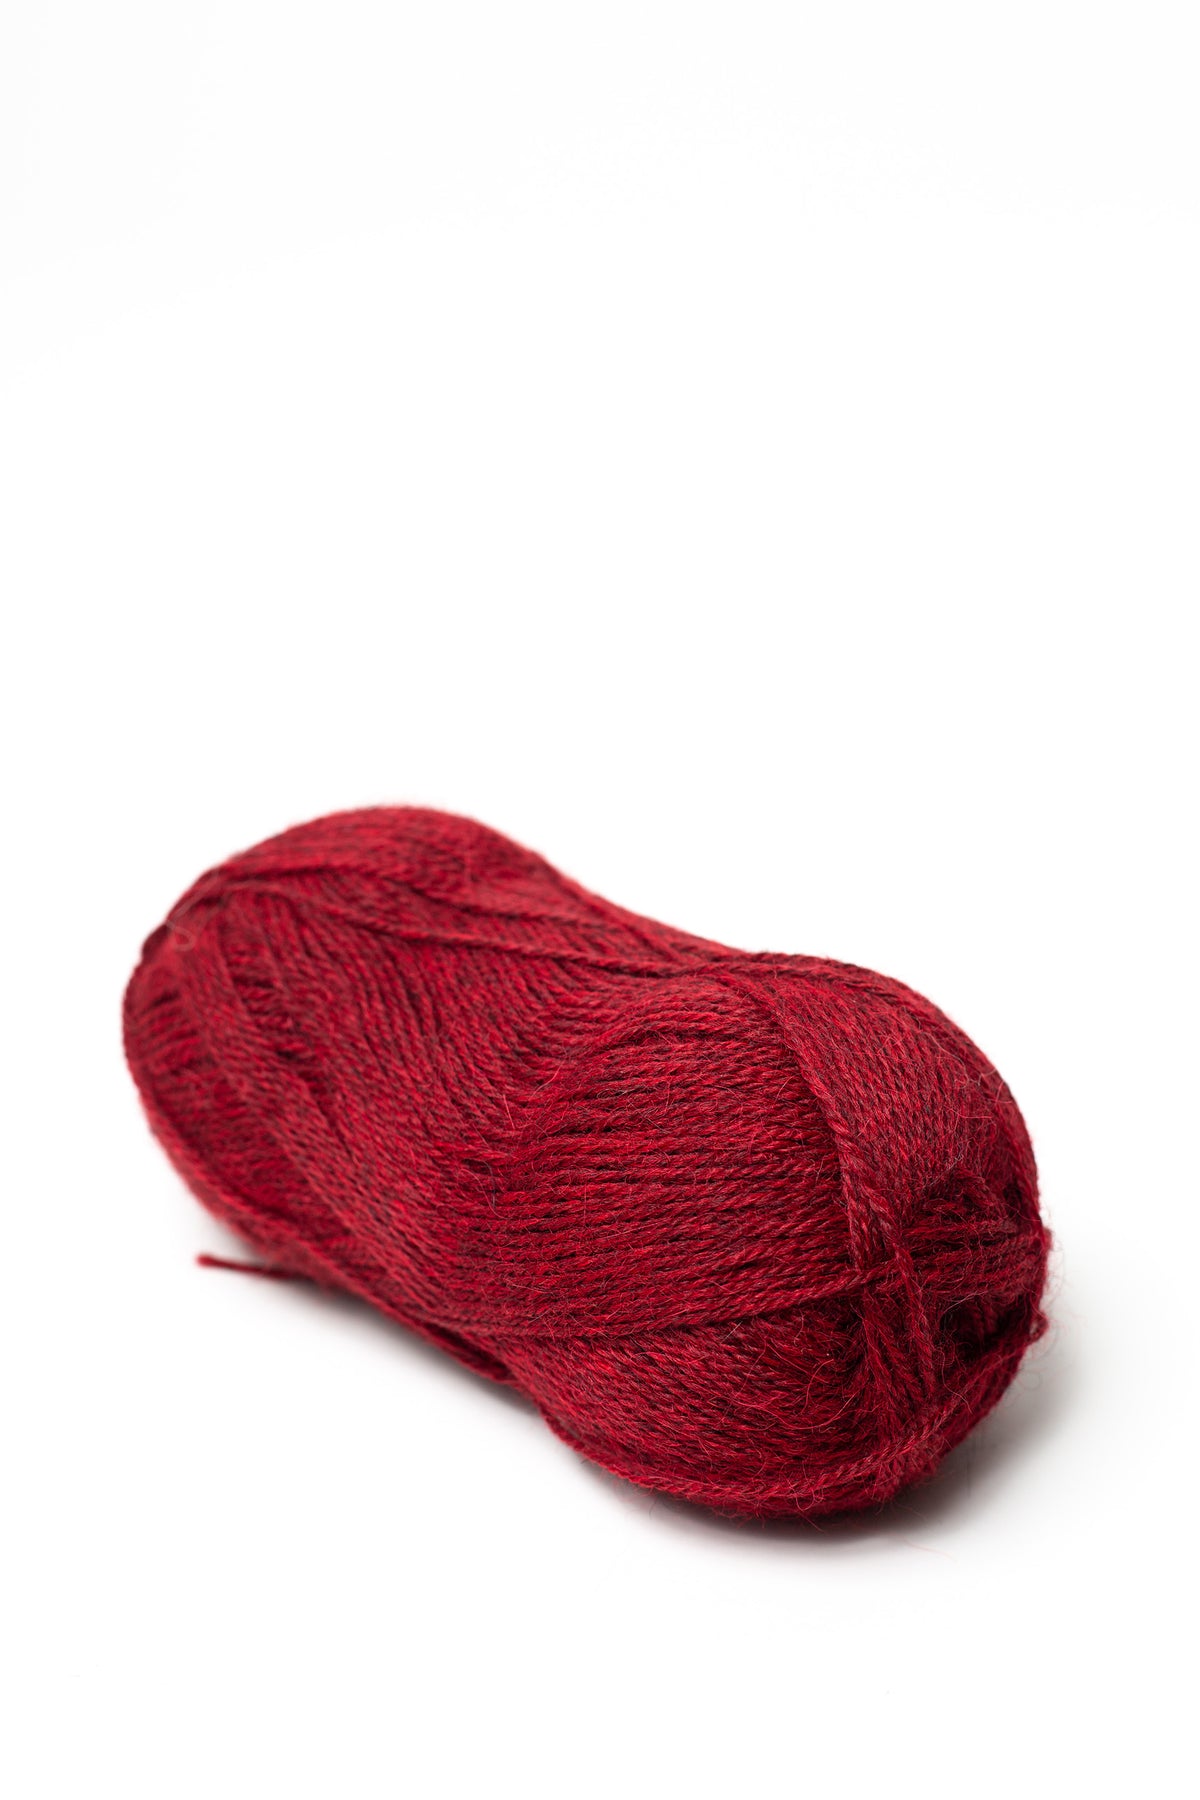 Drops Alpaca - Camel Beige (0302) - Sport Knitting Wool & Yarn